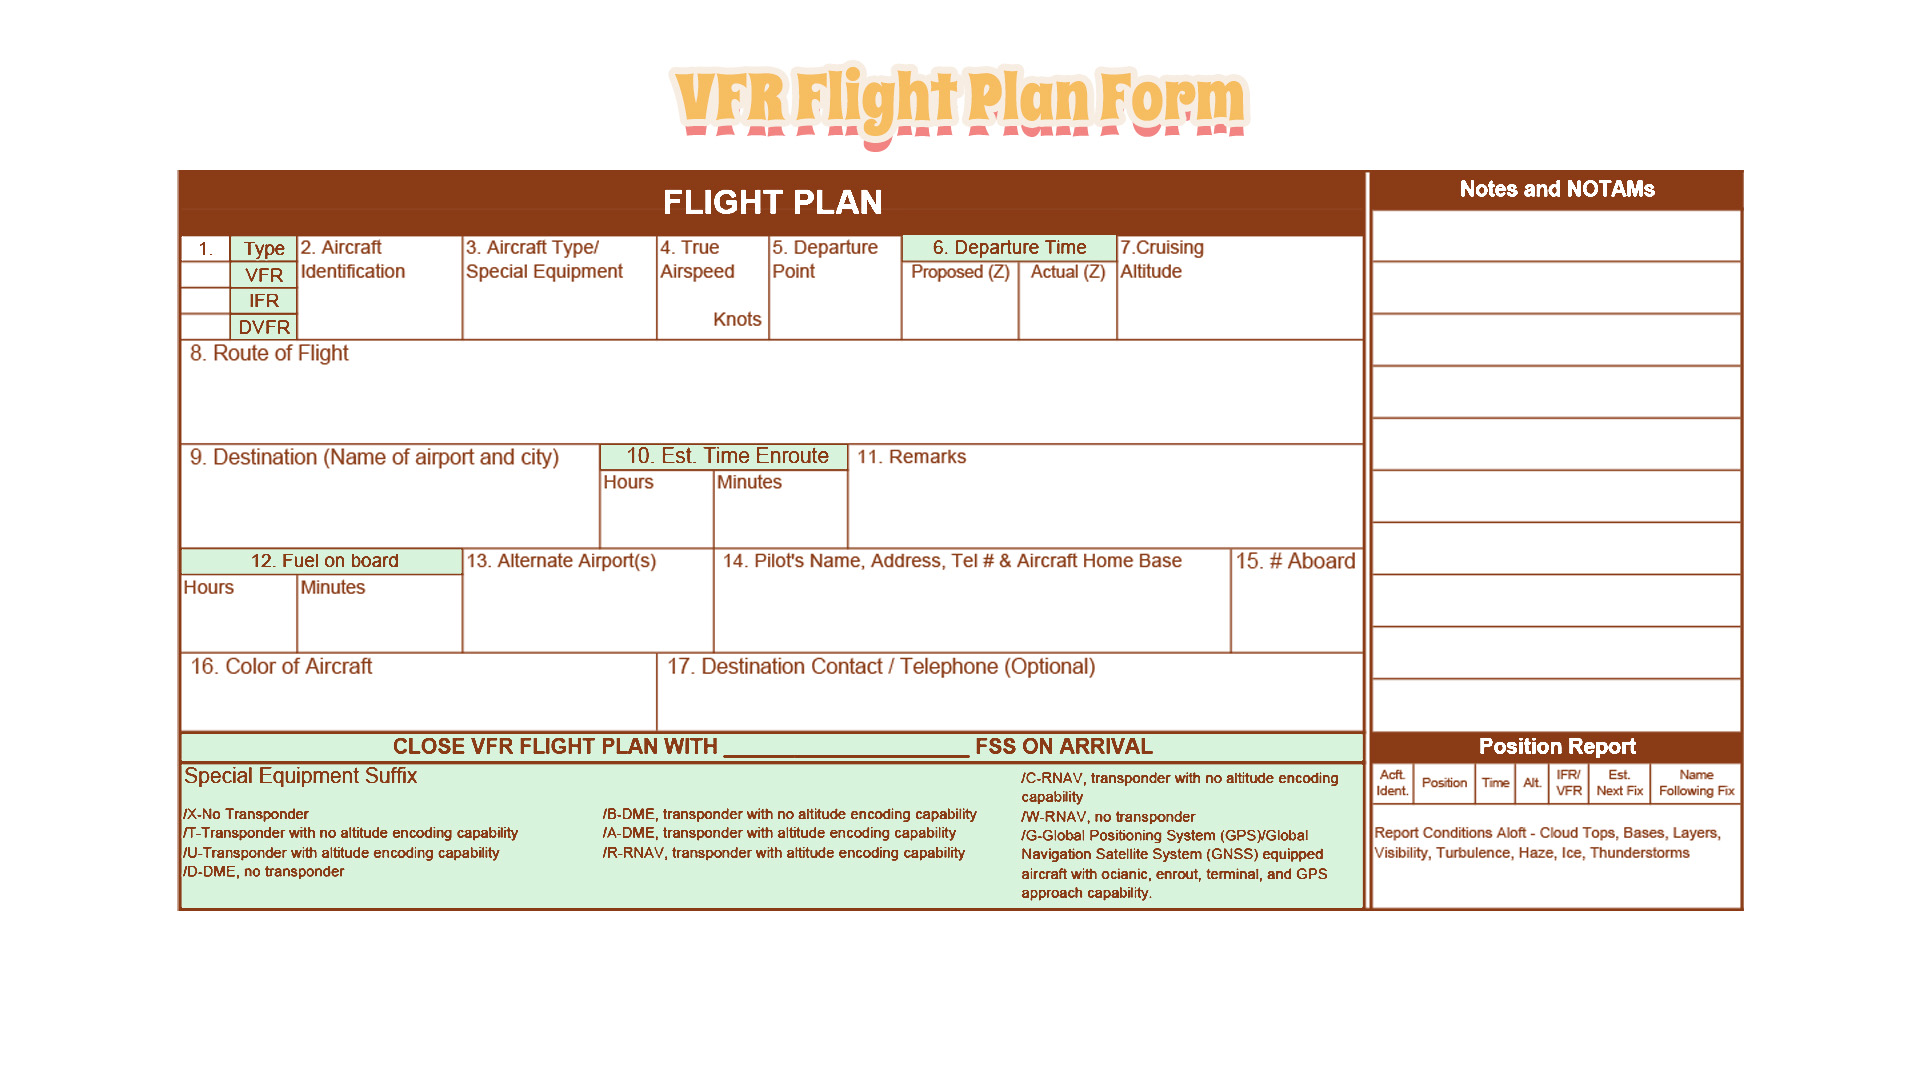 VFR Flight Plan Form Image